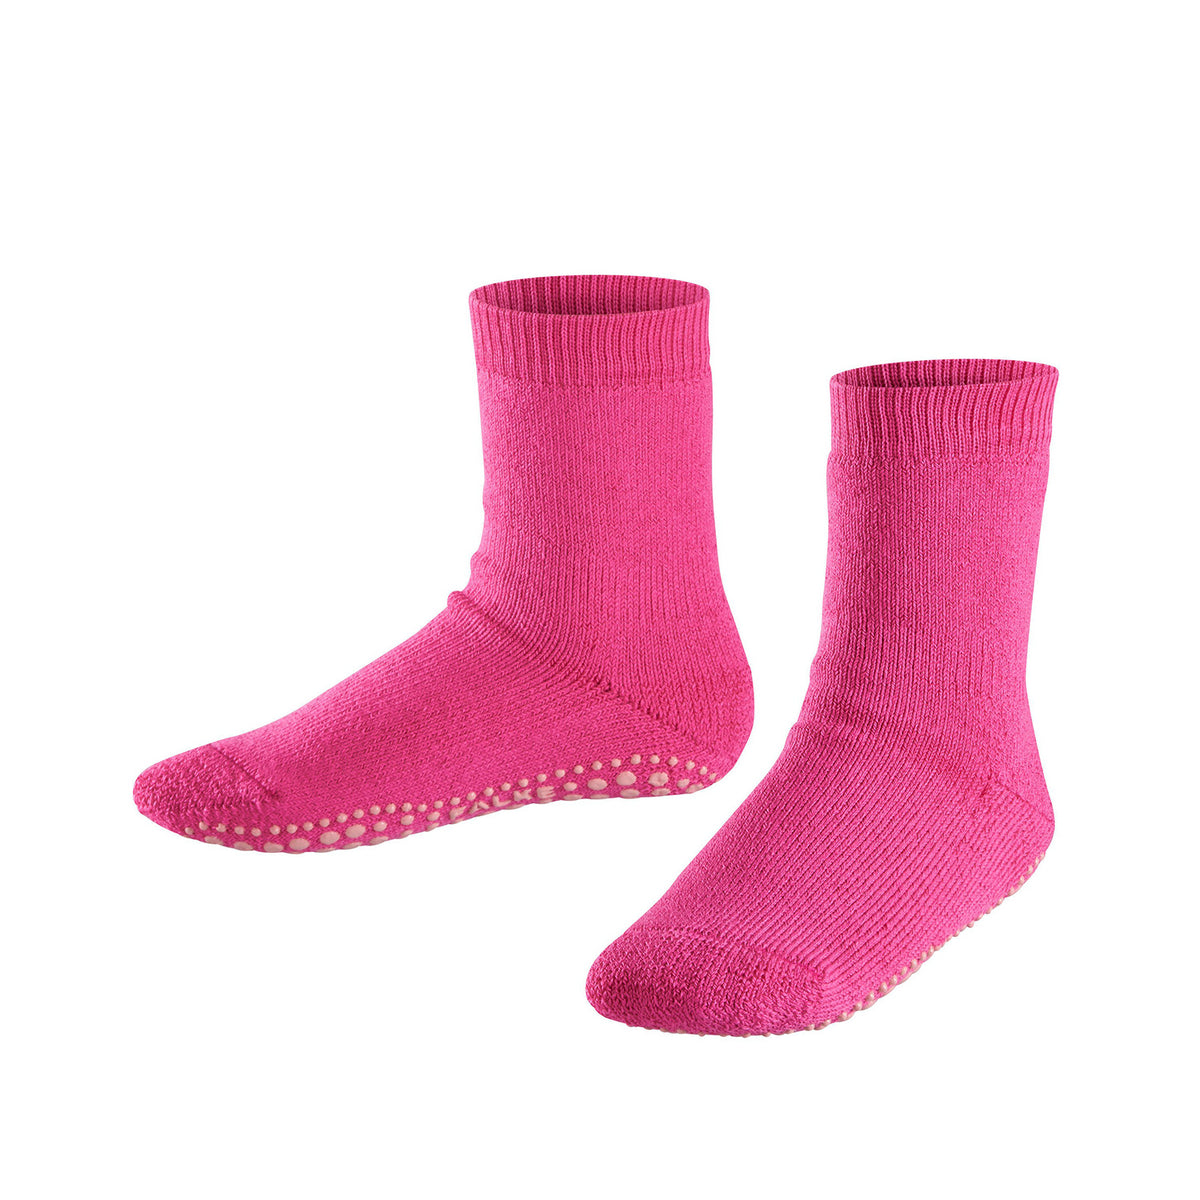 FALKE Catspads non-slip socks for kids